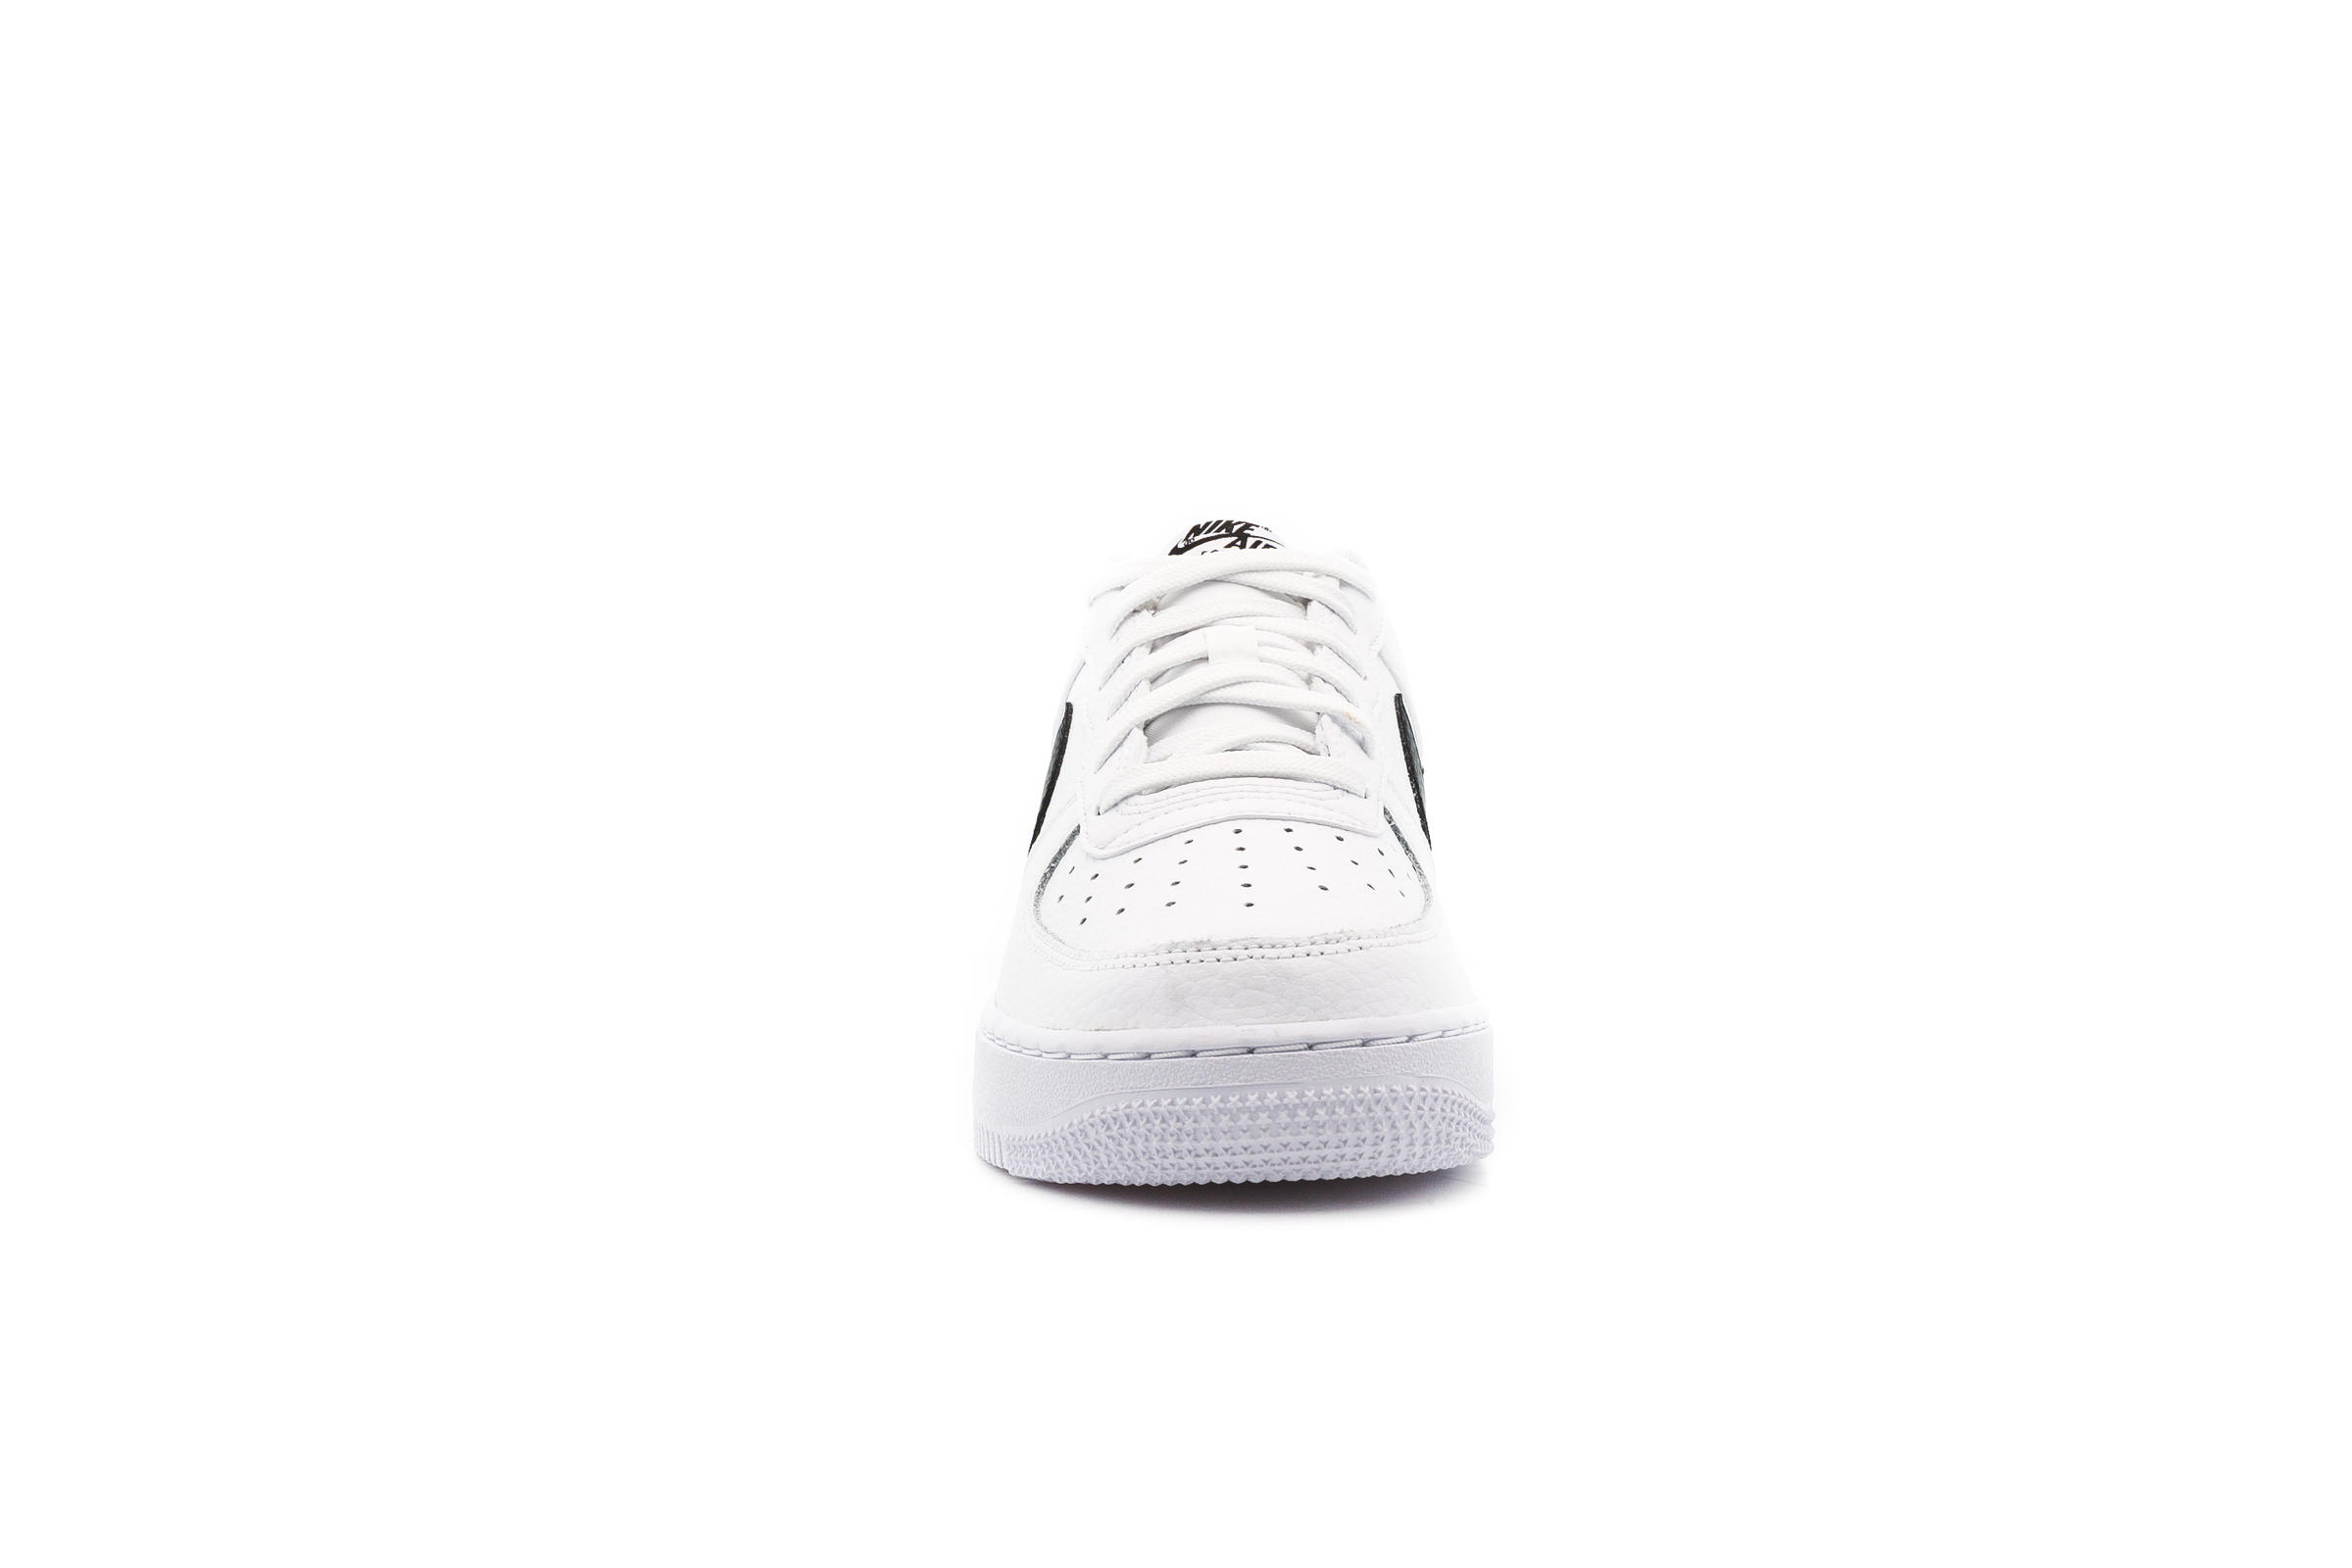 Nike AIR FORCE 1 (GS) "WHITE"